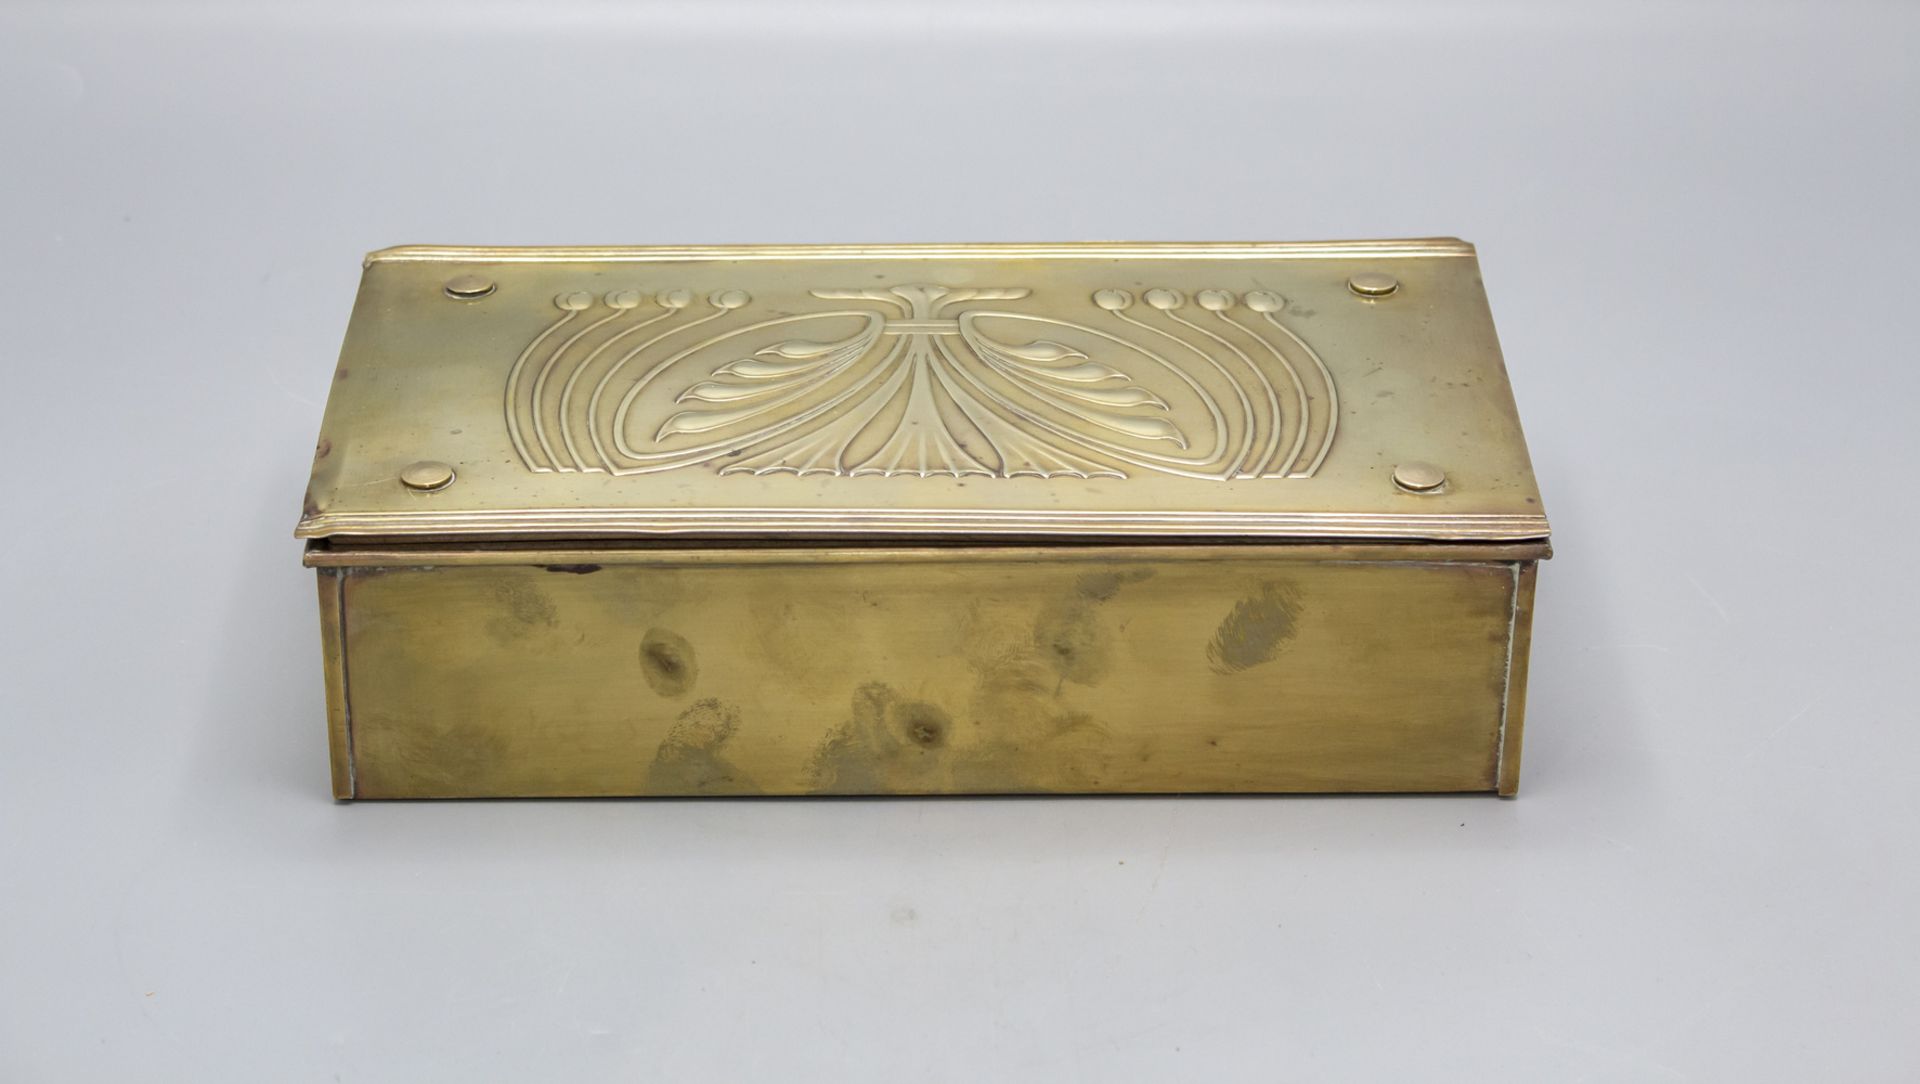 Jugendstil Zigarrendose / Schatulle / An Art Nouveau cigar box, deutsch, um 1900